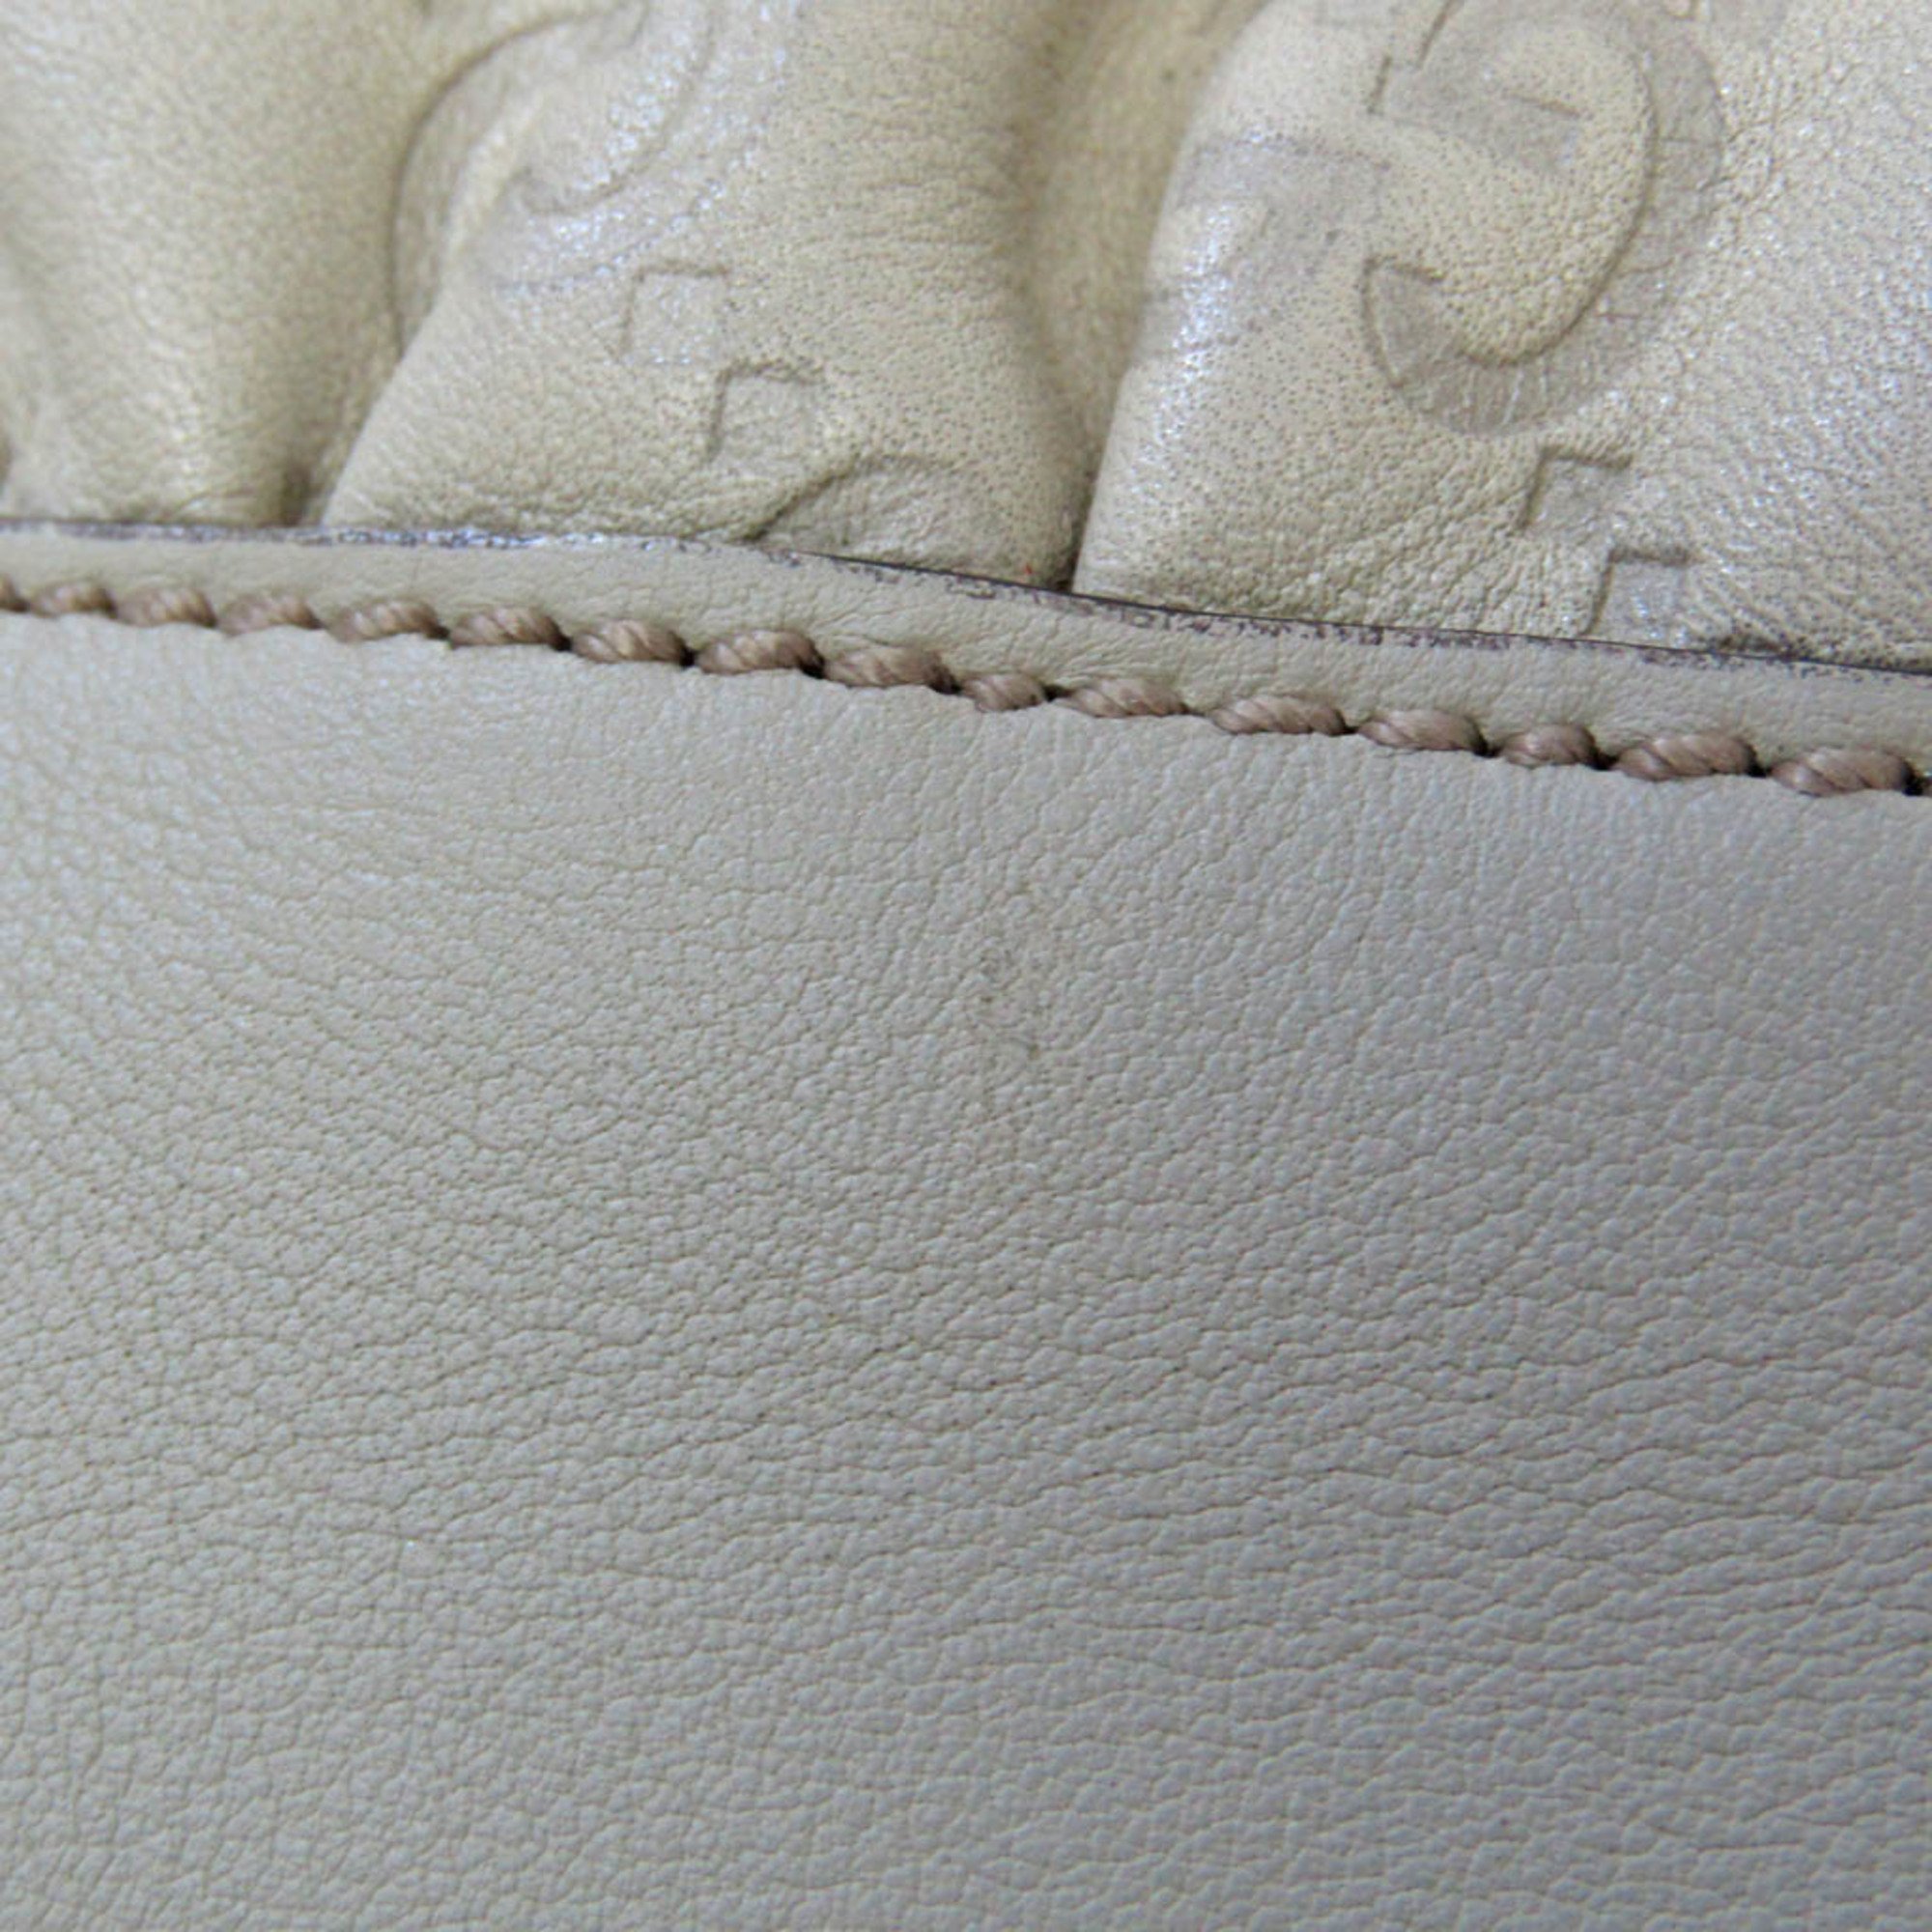 Gucci Guccissima Hysteria 197020 Women's Leather Handbag Cream